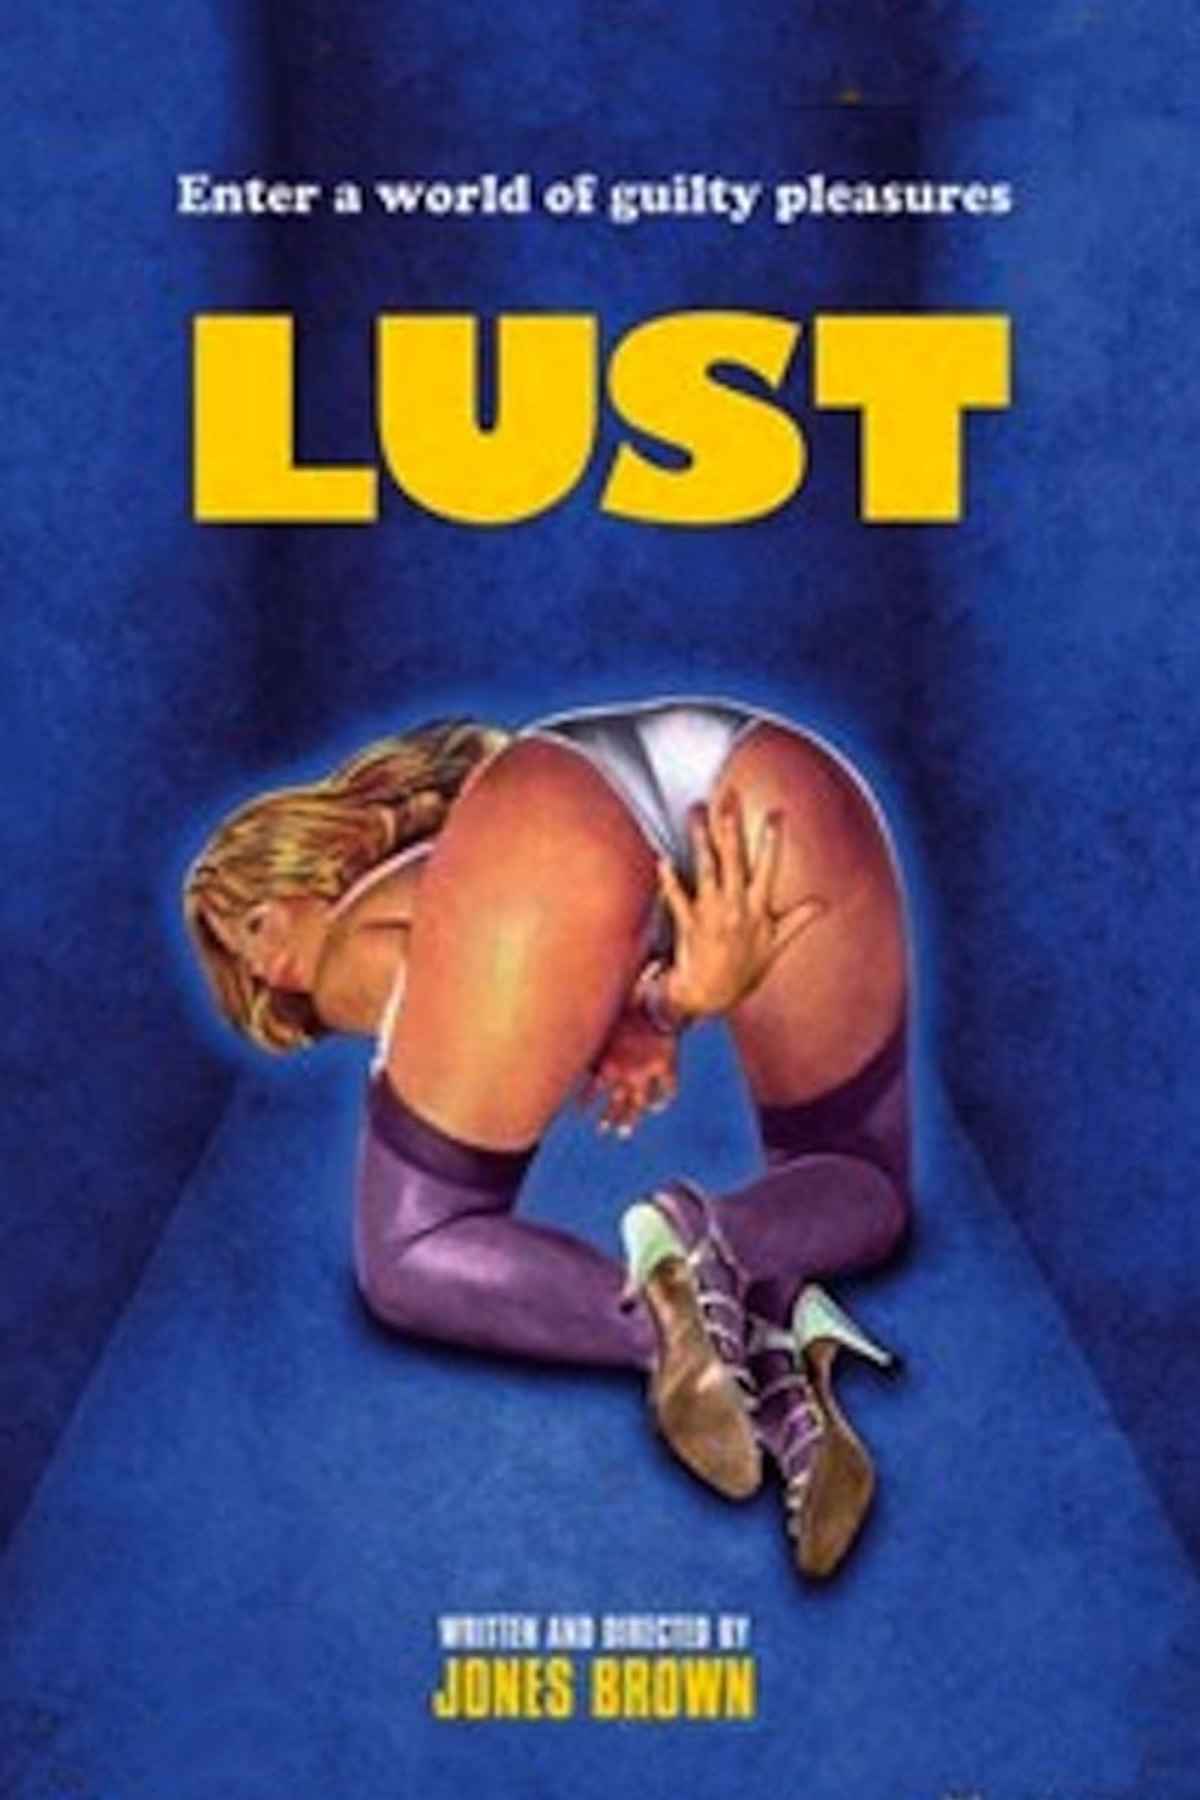 Lust films